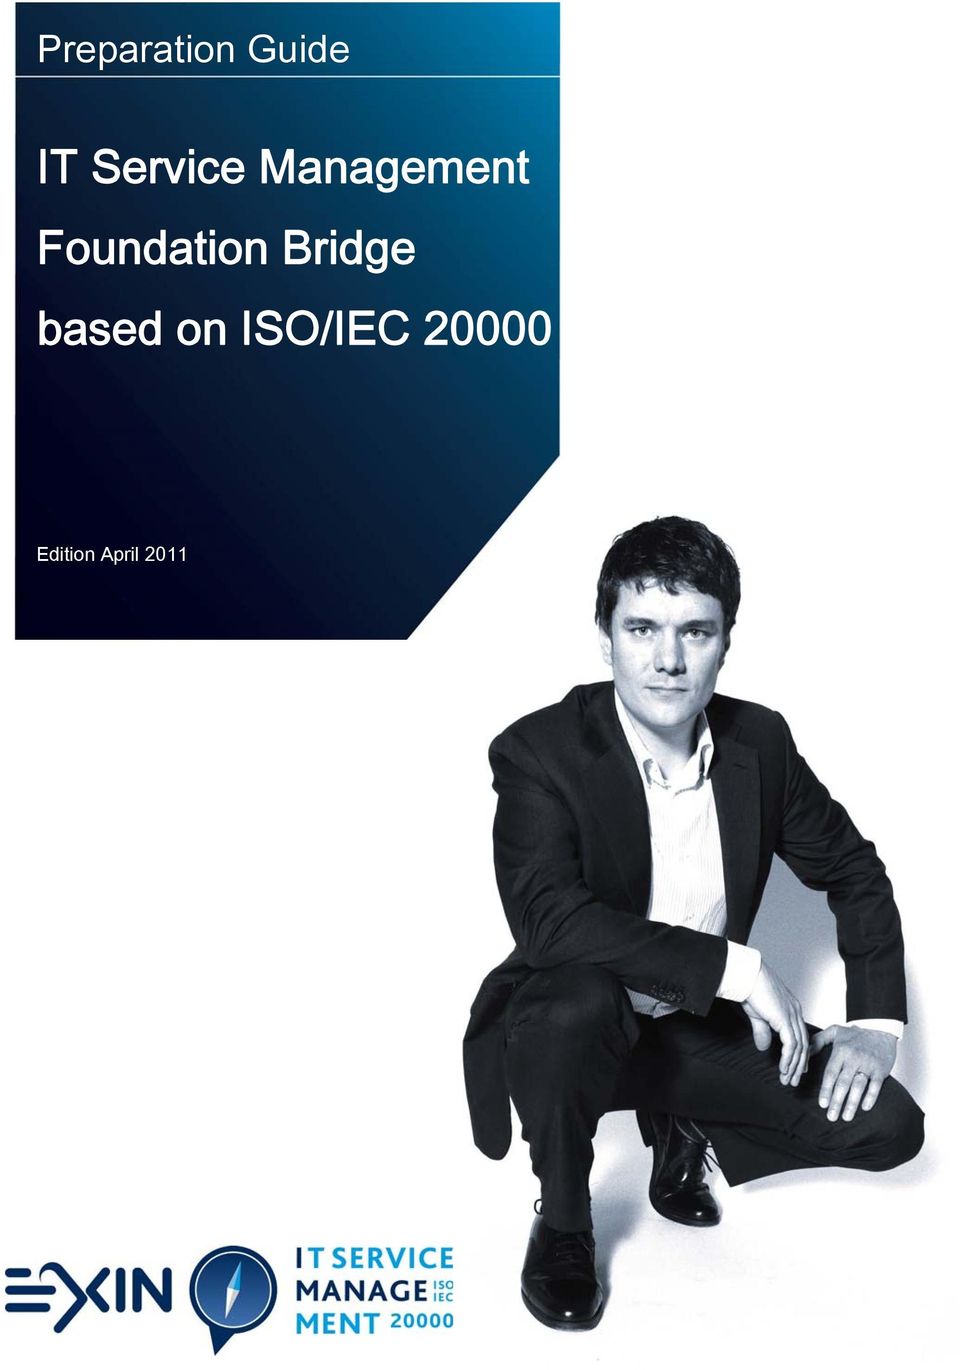 Foundation Bridge based